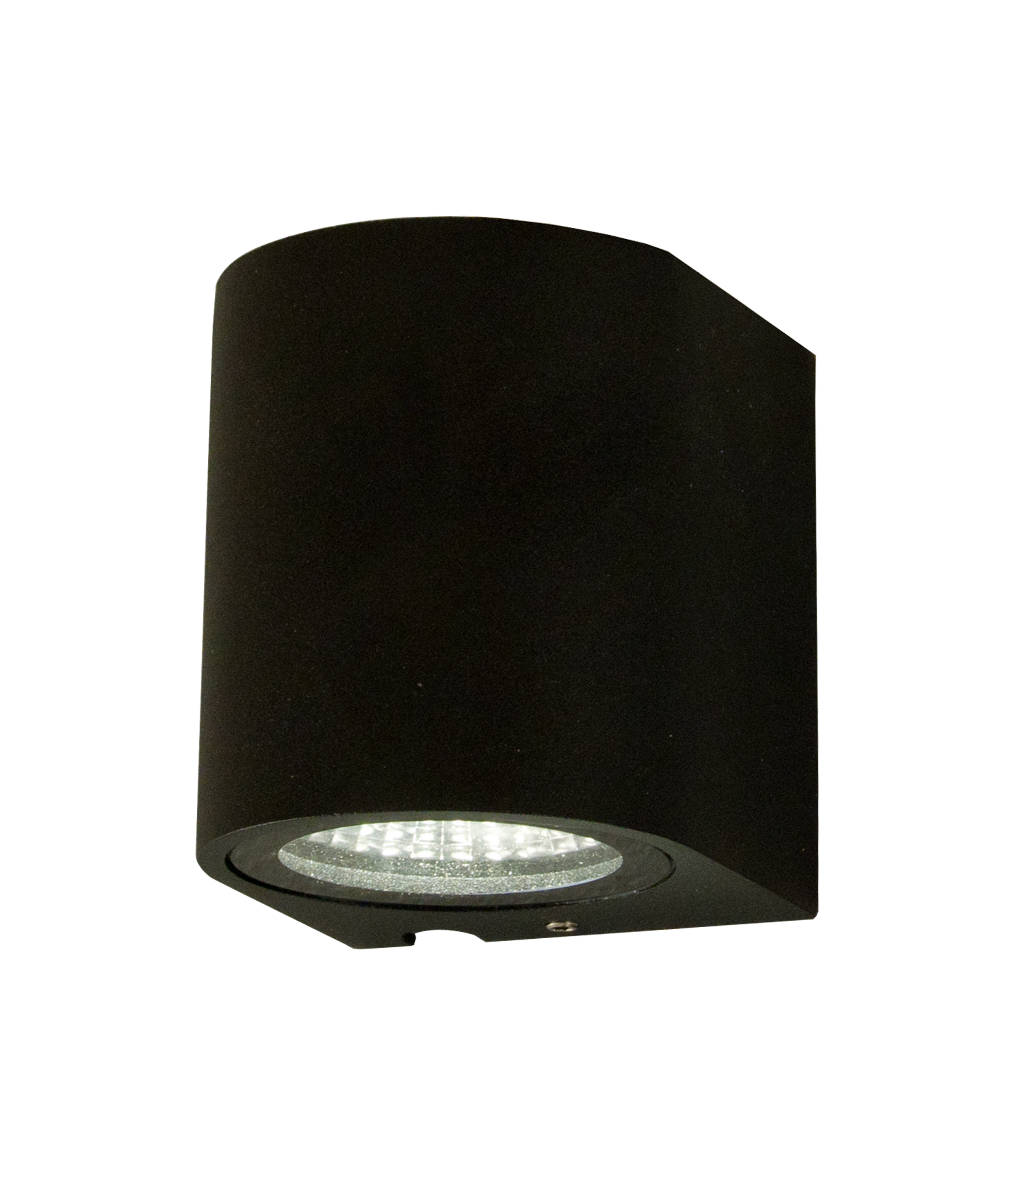 Aneta Belysning Union Vägglampa Svart 8 cm